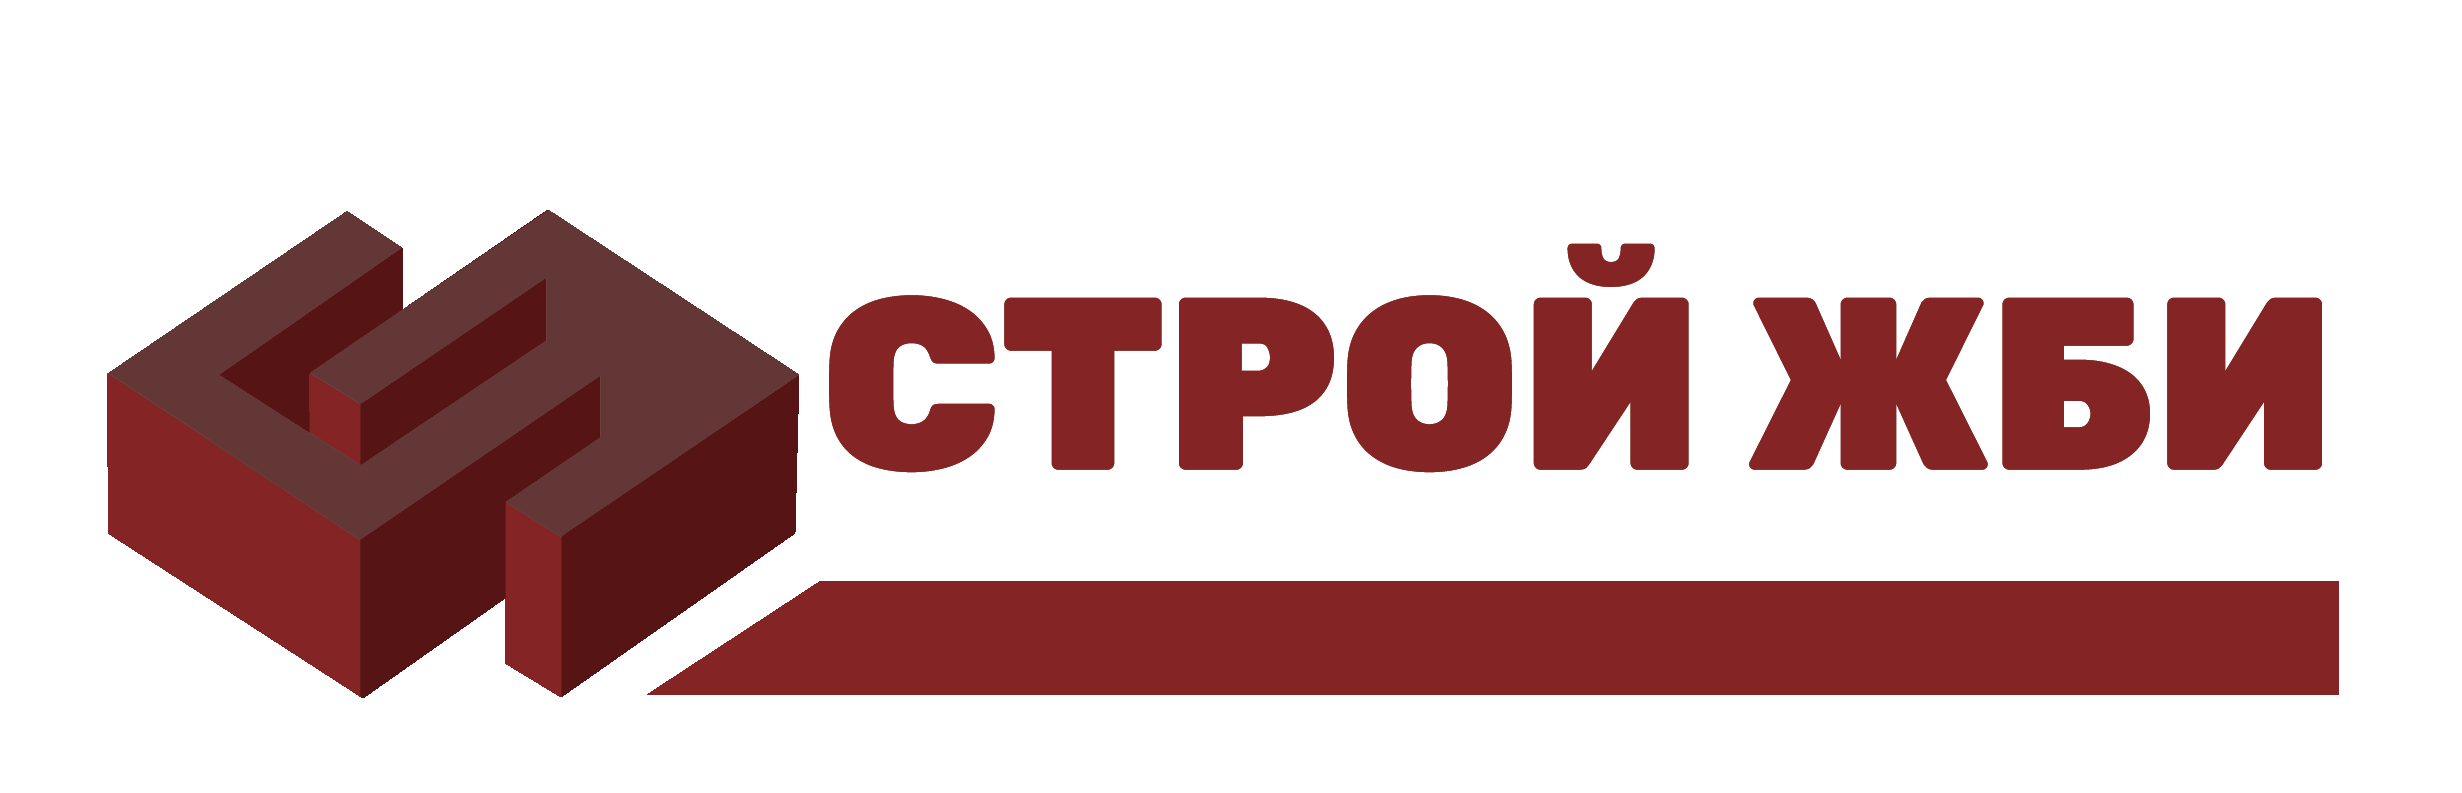 Интернет магазин Opencart "Русская сборка"